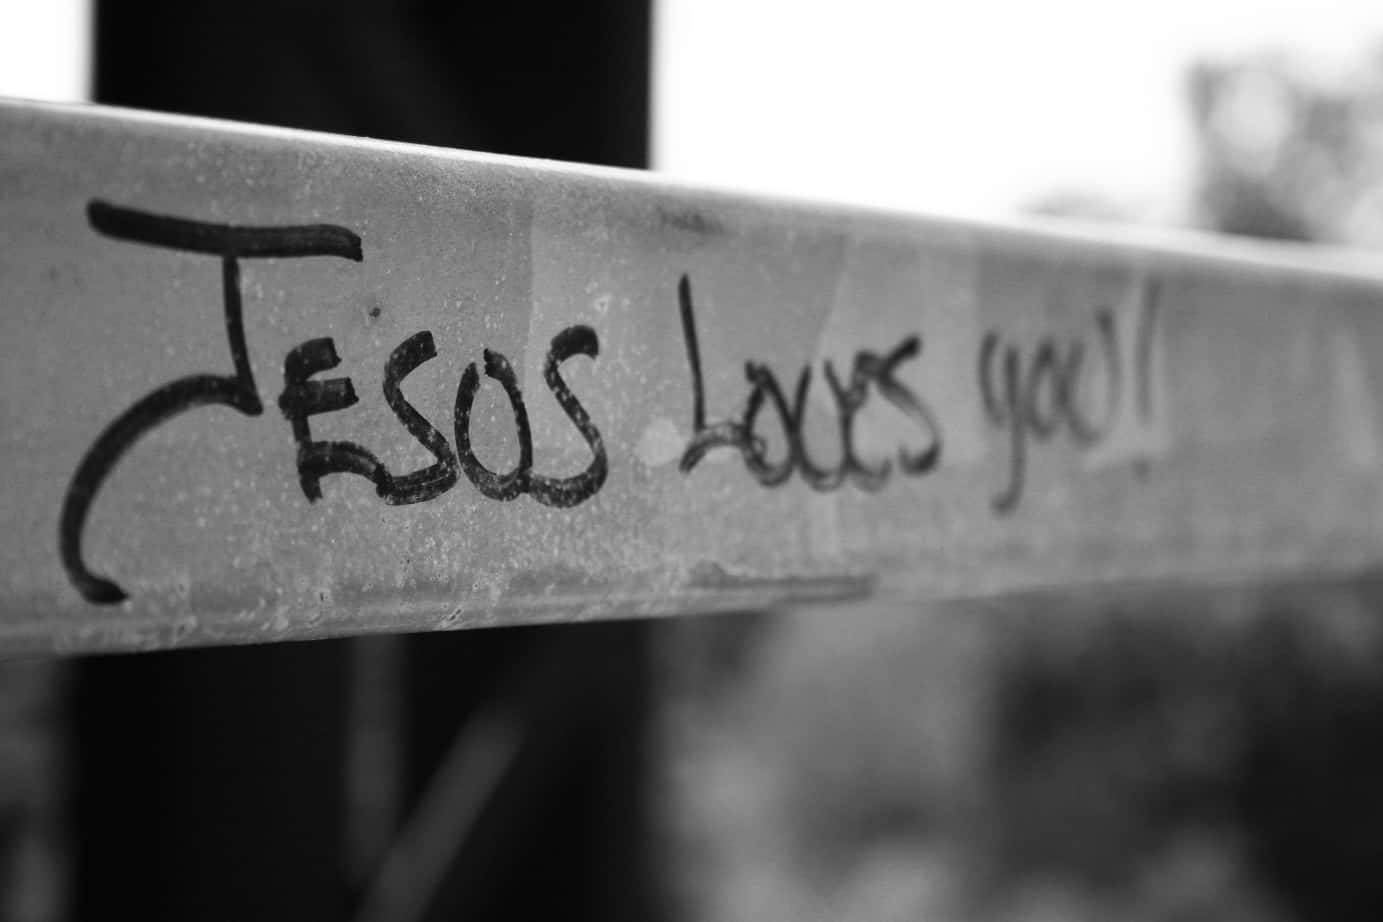 Jesus elsker dig ubetinget. Wallpaper